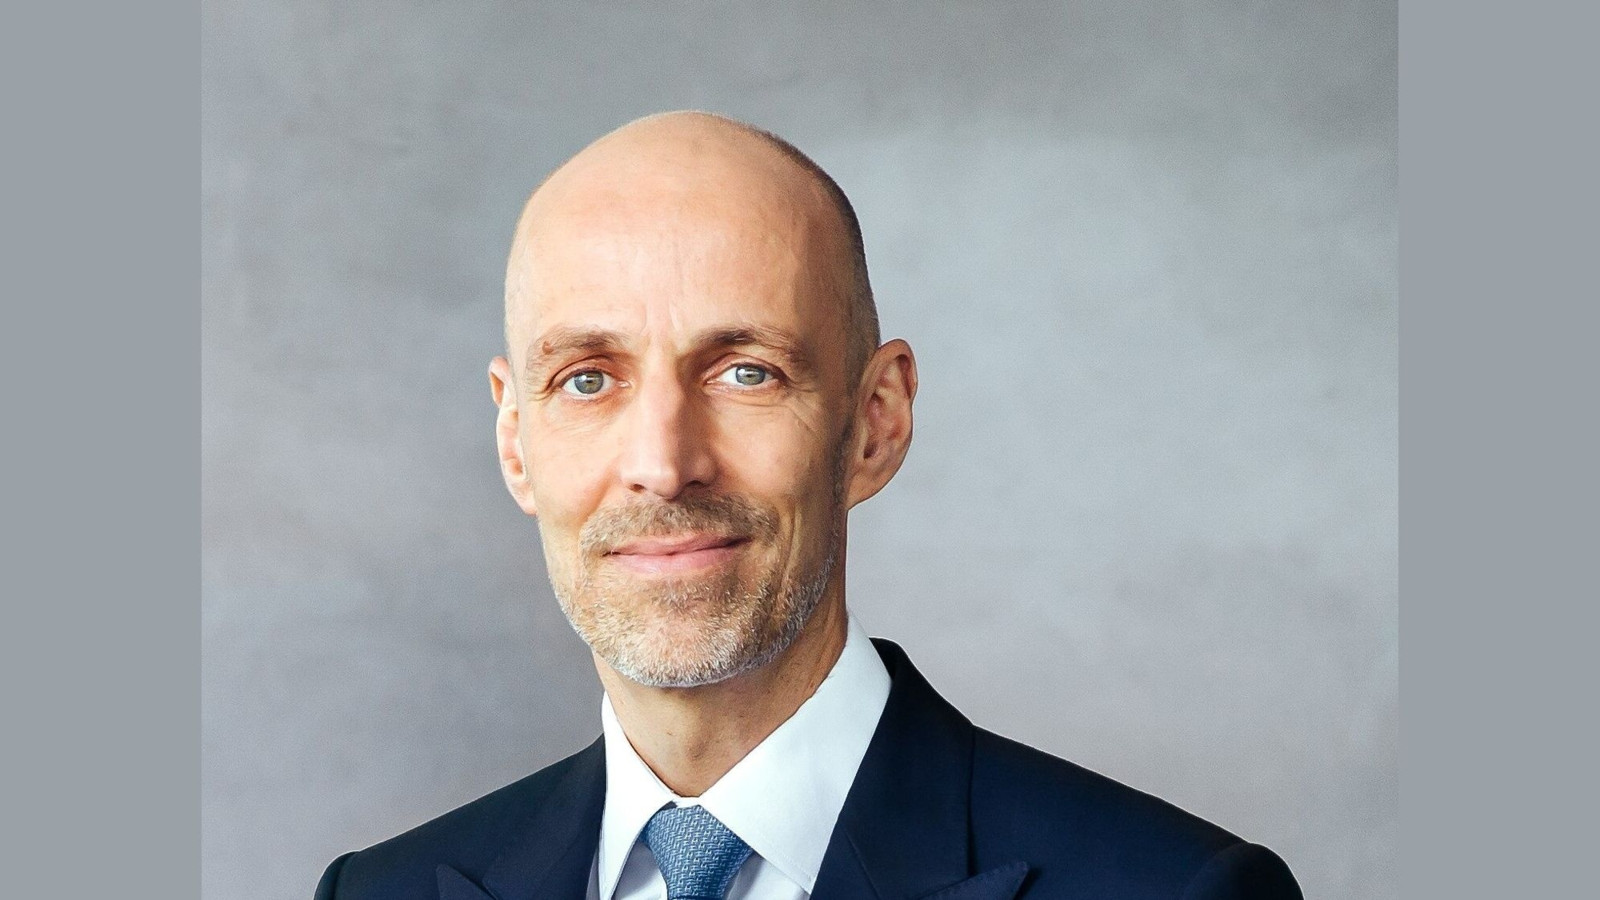 Dr.-Ing. e.h. Peter Leibinger war seit 2005 stellvertretender Vorstandsvorsitzender und seit 2017 Chief Technology Officer (CTO) bei Trumpf. Nun scheidet er aus dem Vorstand aus und übernimmt das Amt des Aufsichtsratsvorsitzenden.